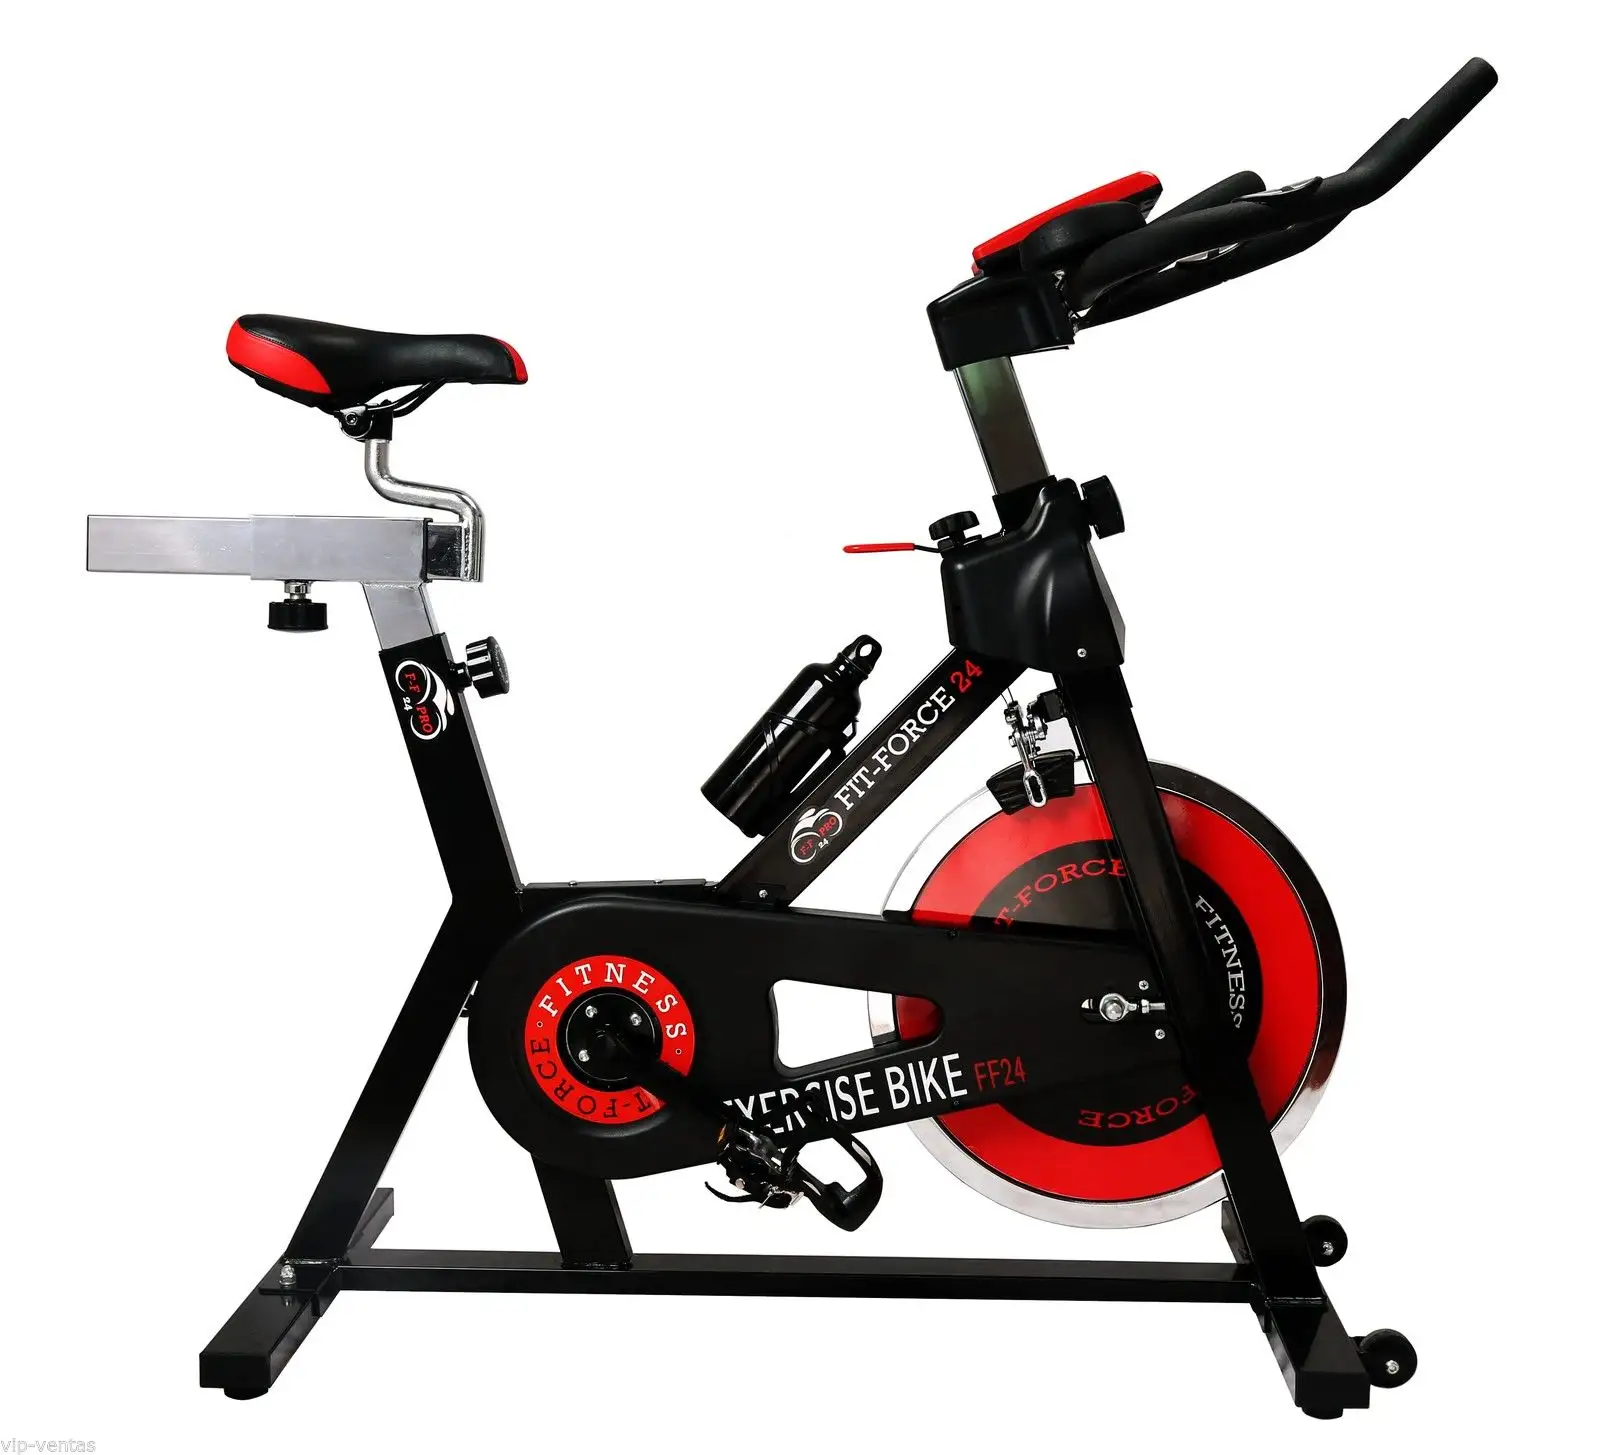 Hot Selling Indoor Gym Cardio Training Faltbares Spinning Bike13Kg Schwungrad Gewicht für Loss Bike